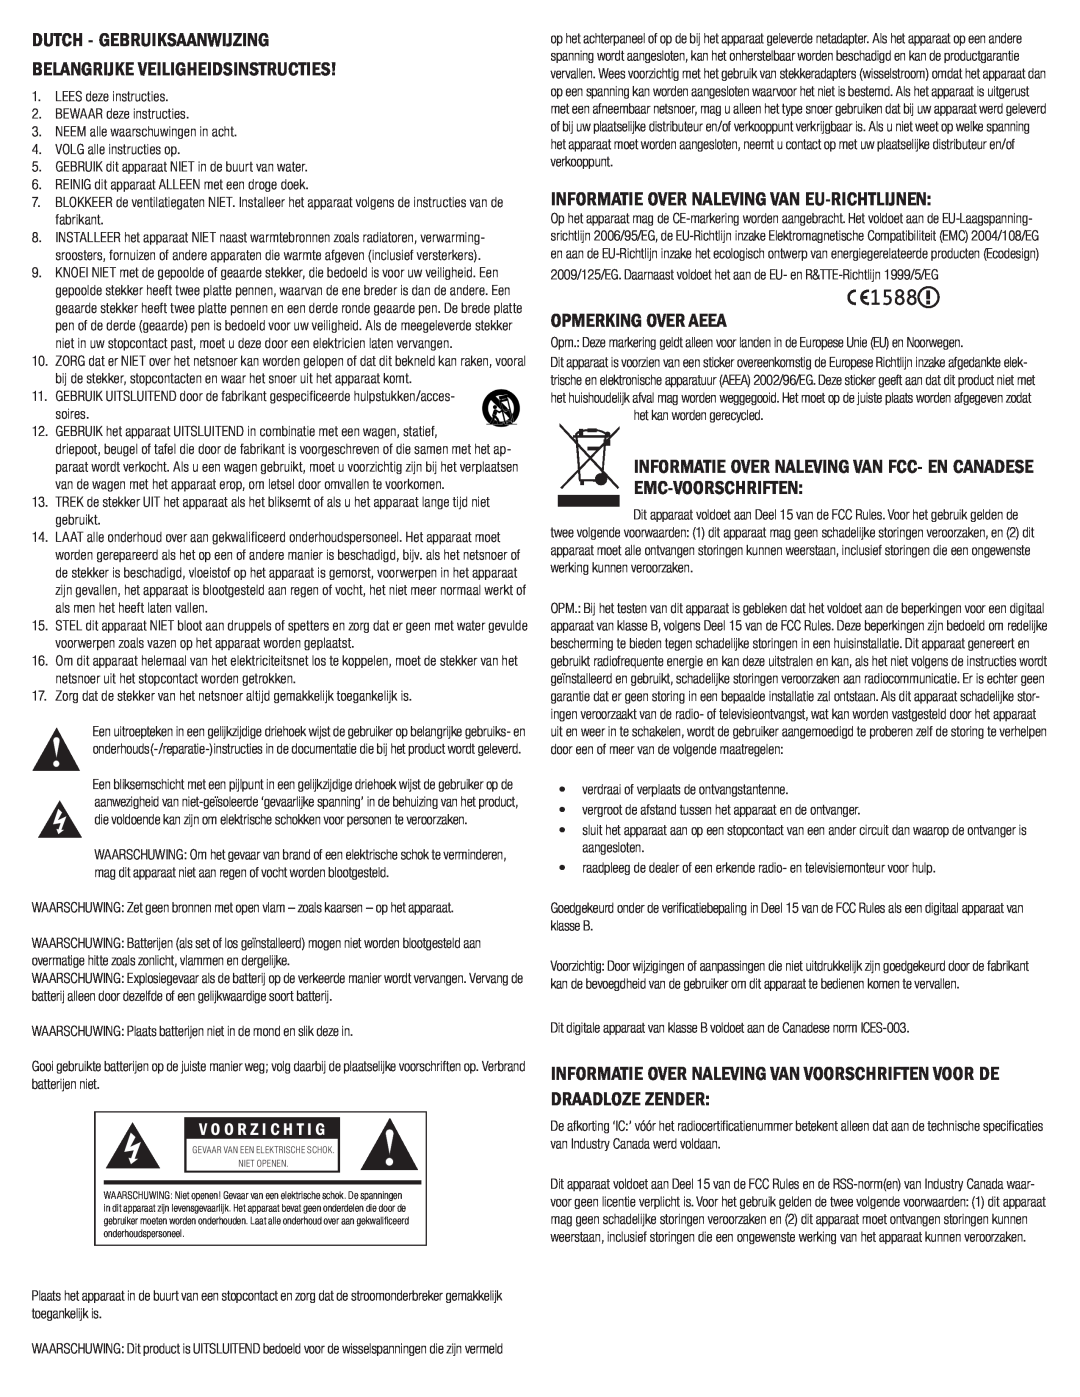 Klipsch G-17 AIR owner manual Dutch - Gebruiksaanwijzing, Belangrijke Veiligheidsinstructies, Opmerking Over Aeea 